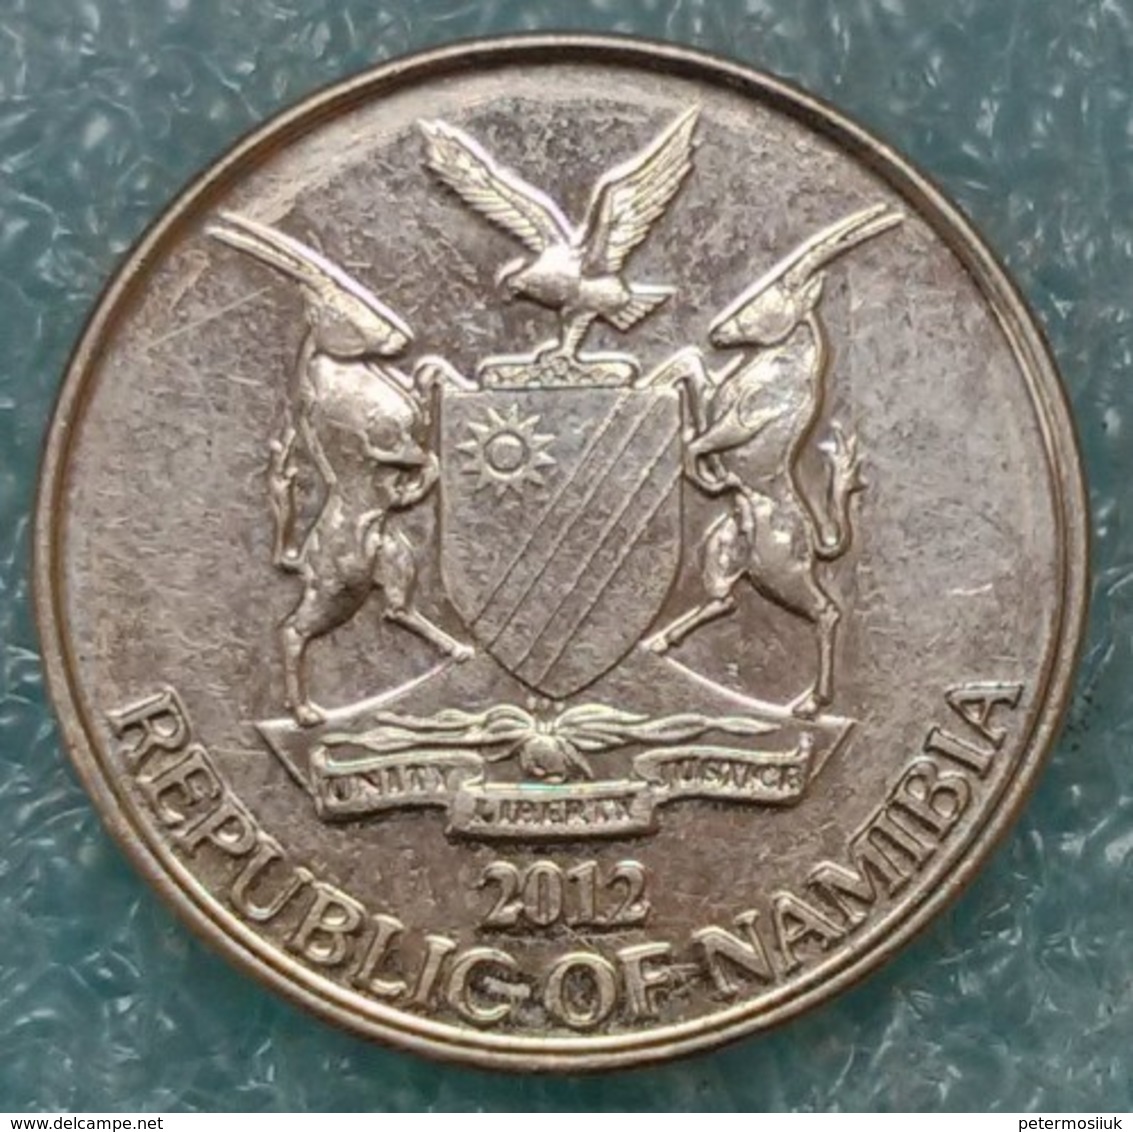 Namibia 10 Cents, 2012 ↓price↓ - Namibia